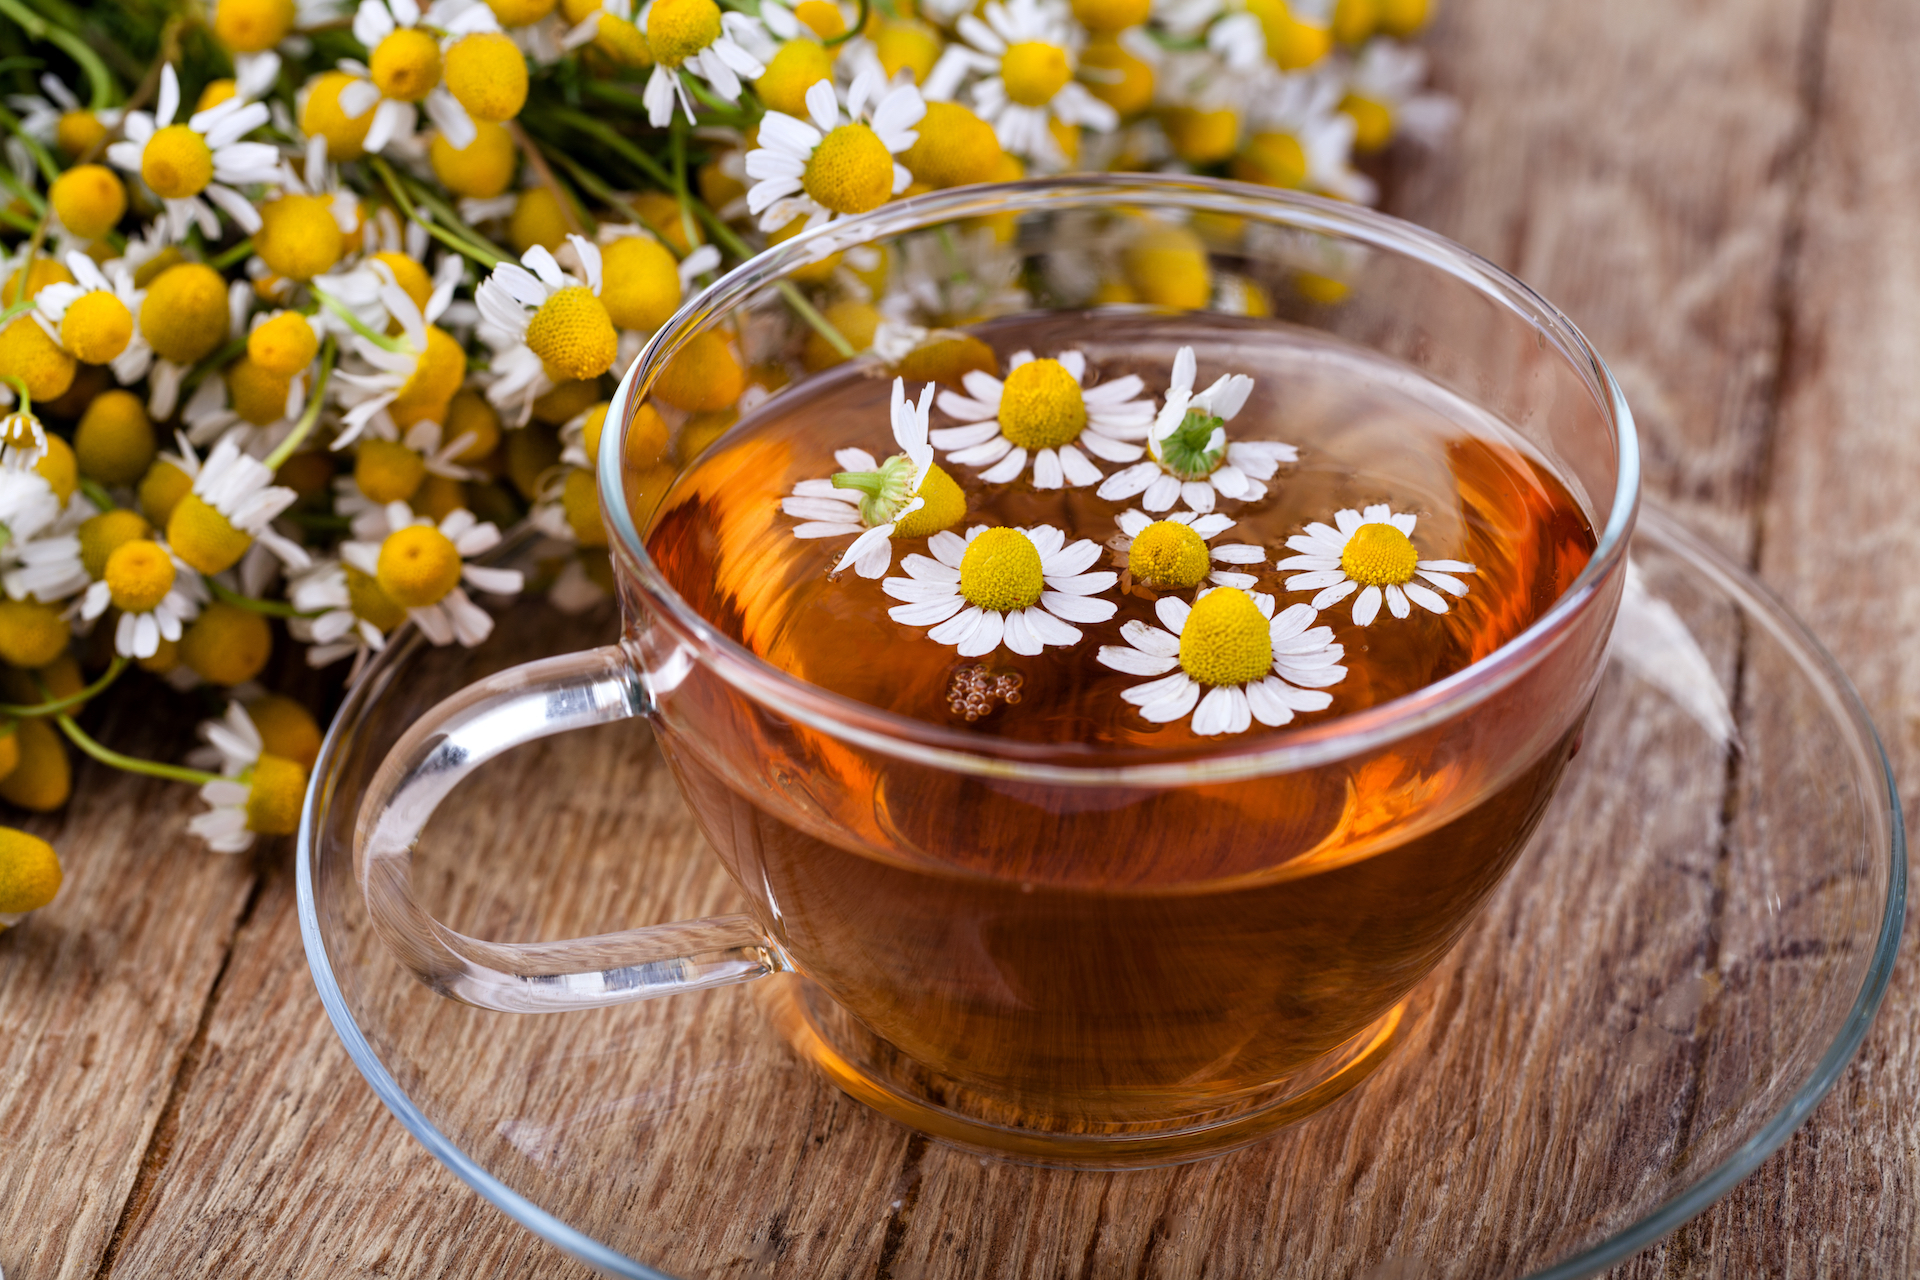 Từ giảm đường huyết đến hỗ trợ giảm cân, loại trà thảo mộc này xứng đáng là 'vàng mười' cho sức khỏe - Ảnh 4